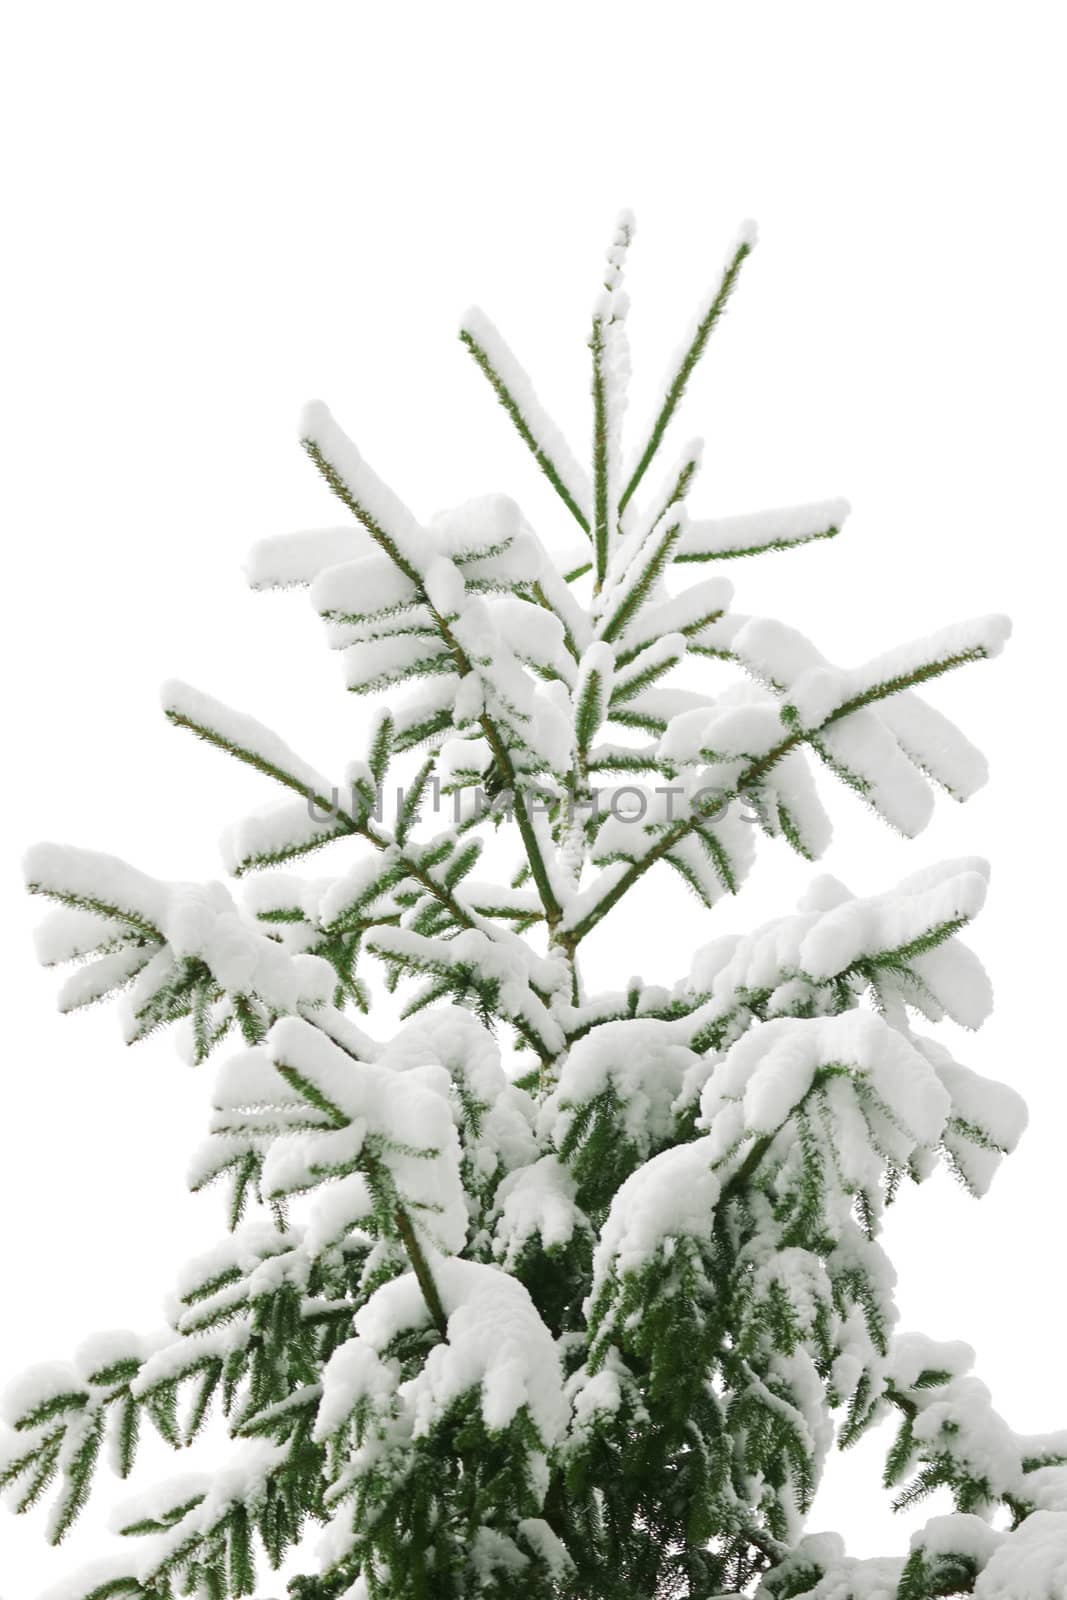 An image of a fir-tree